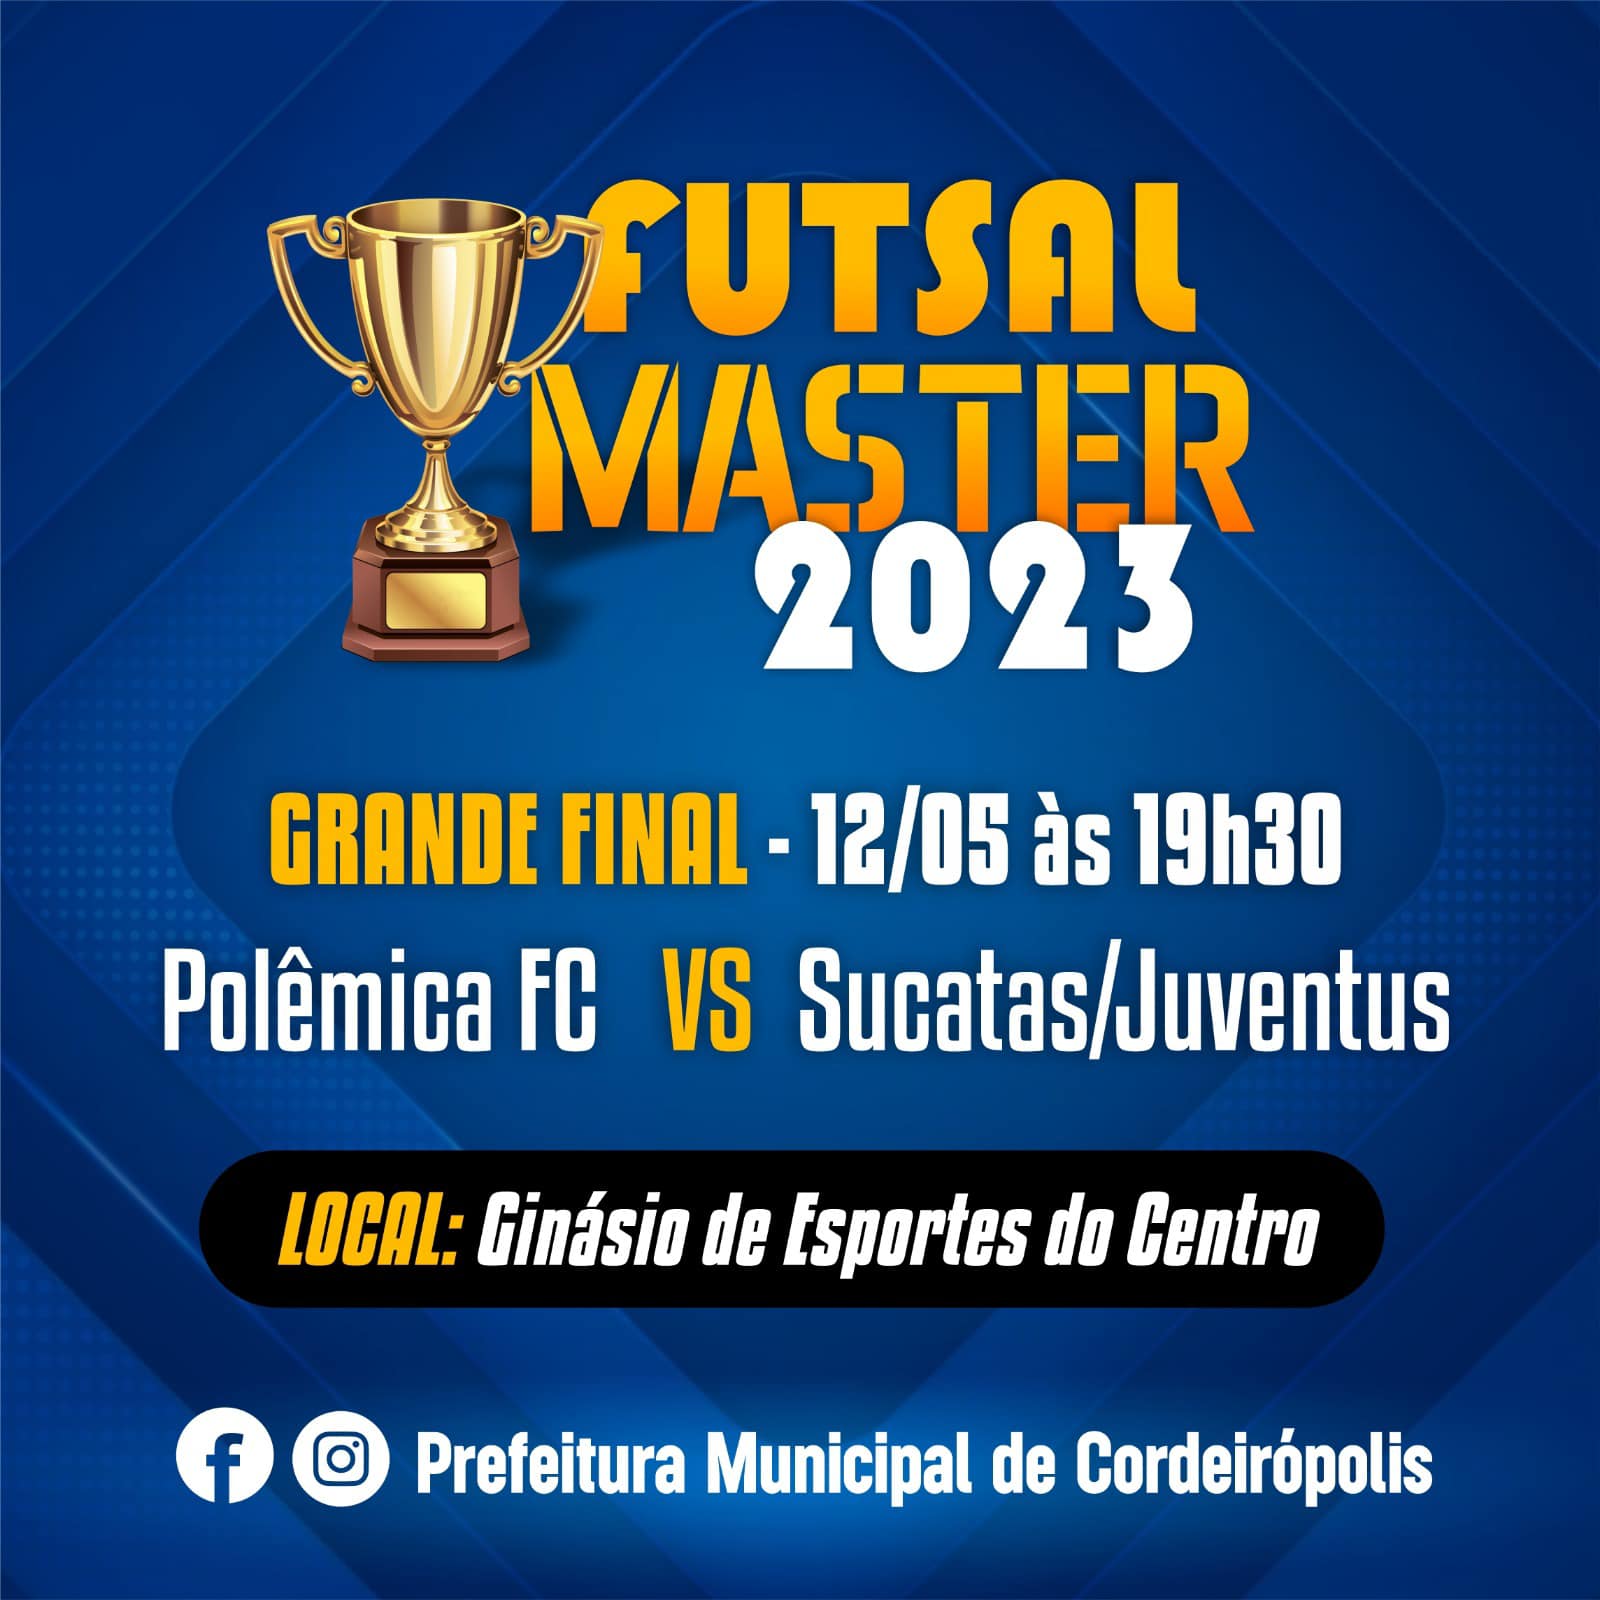 Futsal Master 2023 final entre Polêmica FC e Sucatas Juventus acontece nesta sexta-feira 12